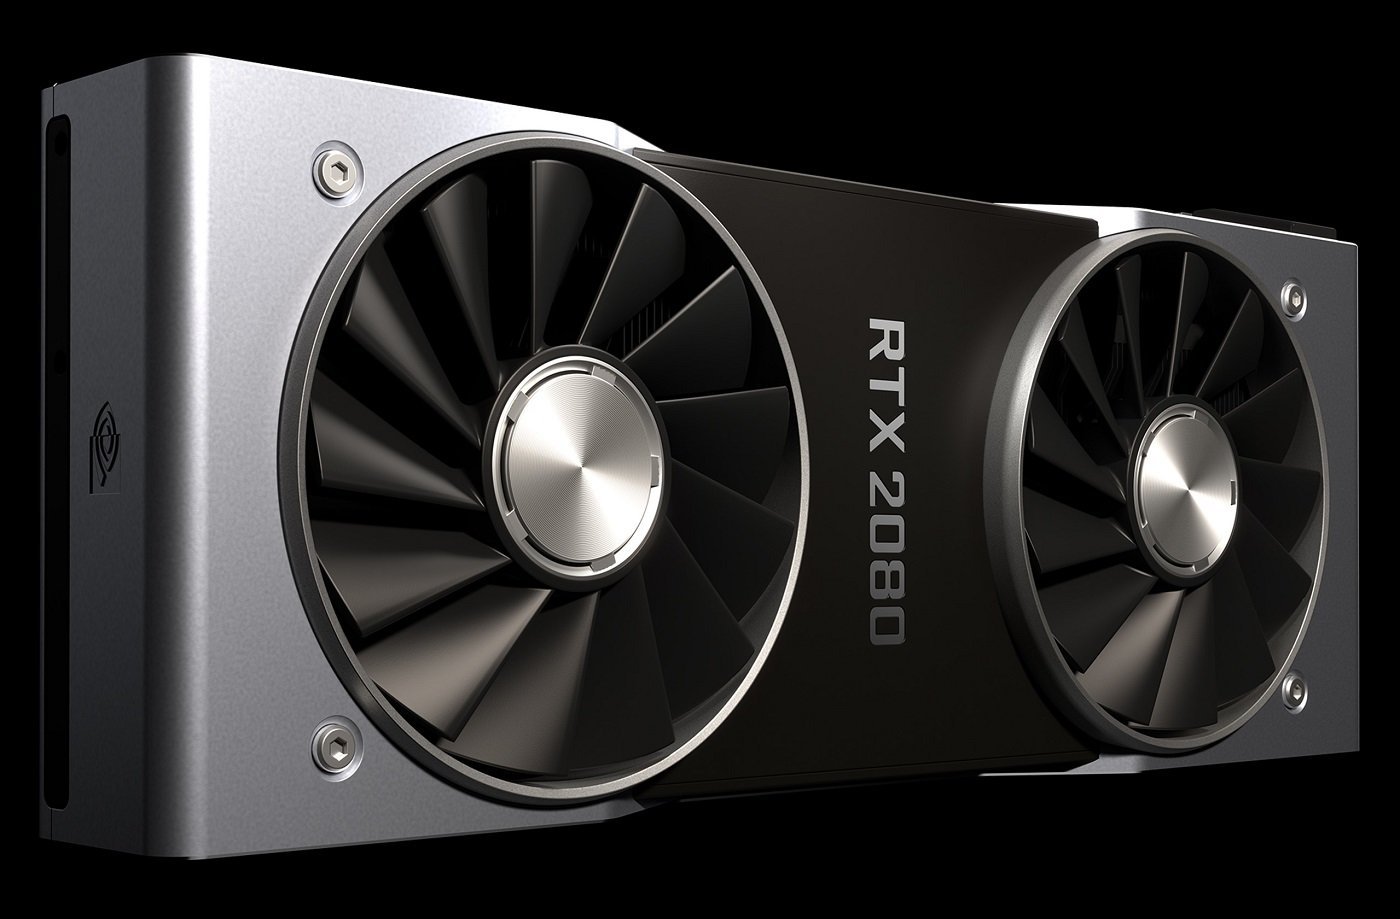 Η Nvidia υποστηρίζει ότι η GeForce RTX 2080 GPU είναι δύο φορές πιο γρήγορη από την GTX 1080